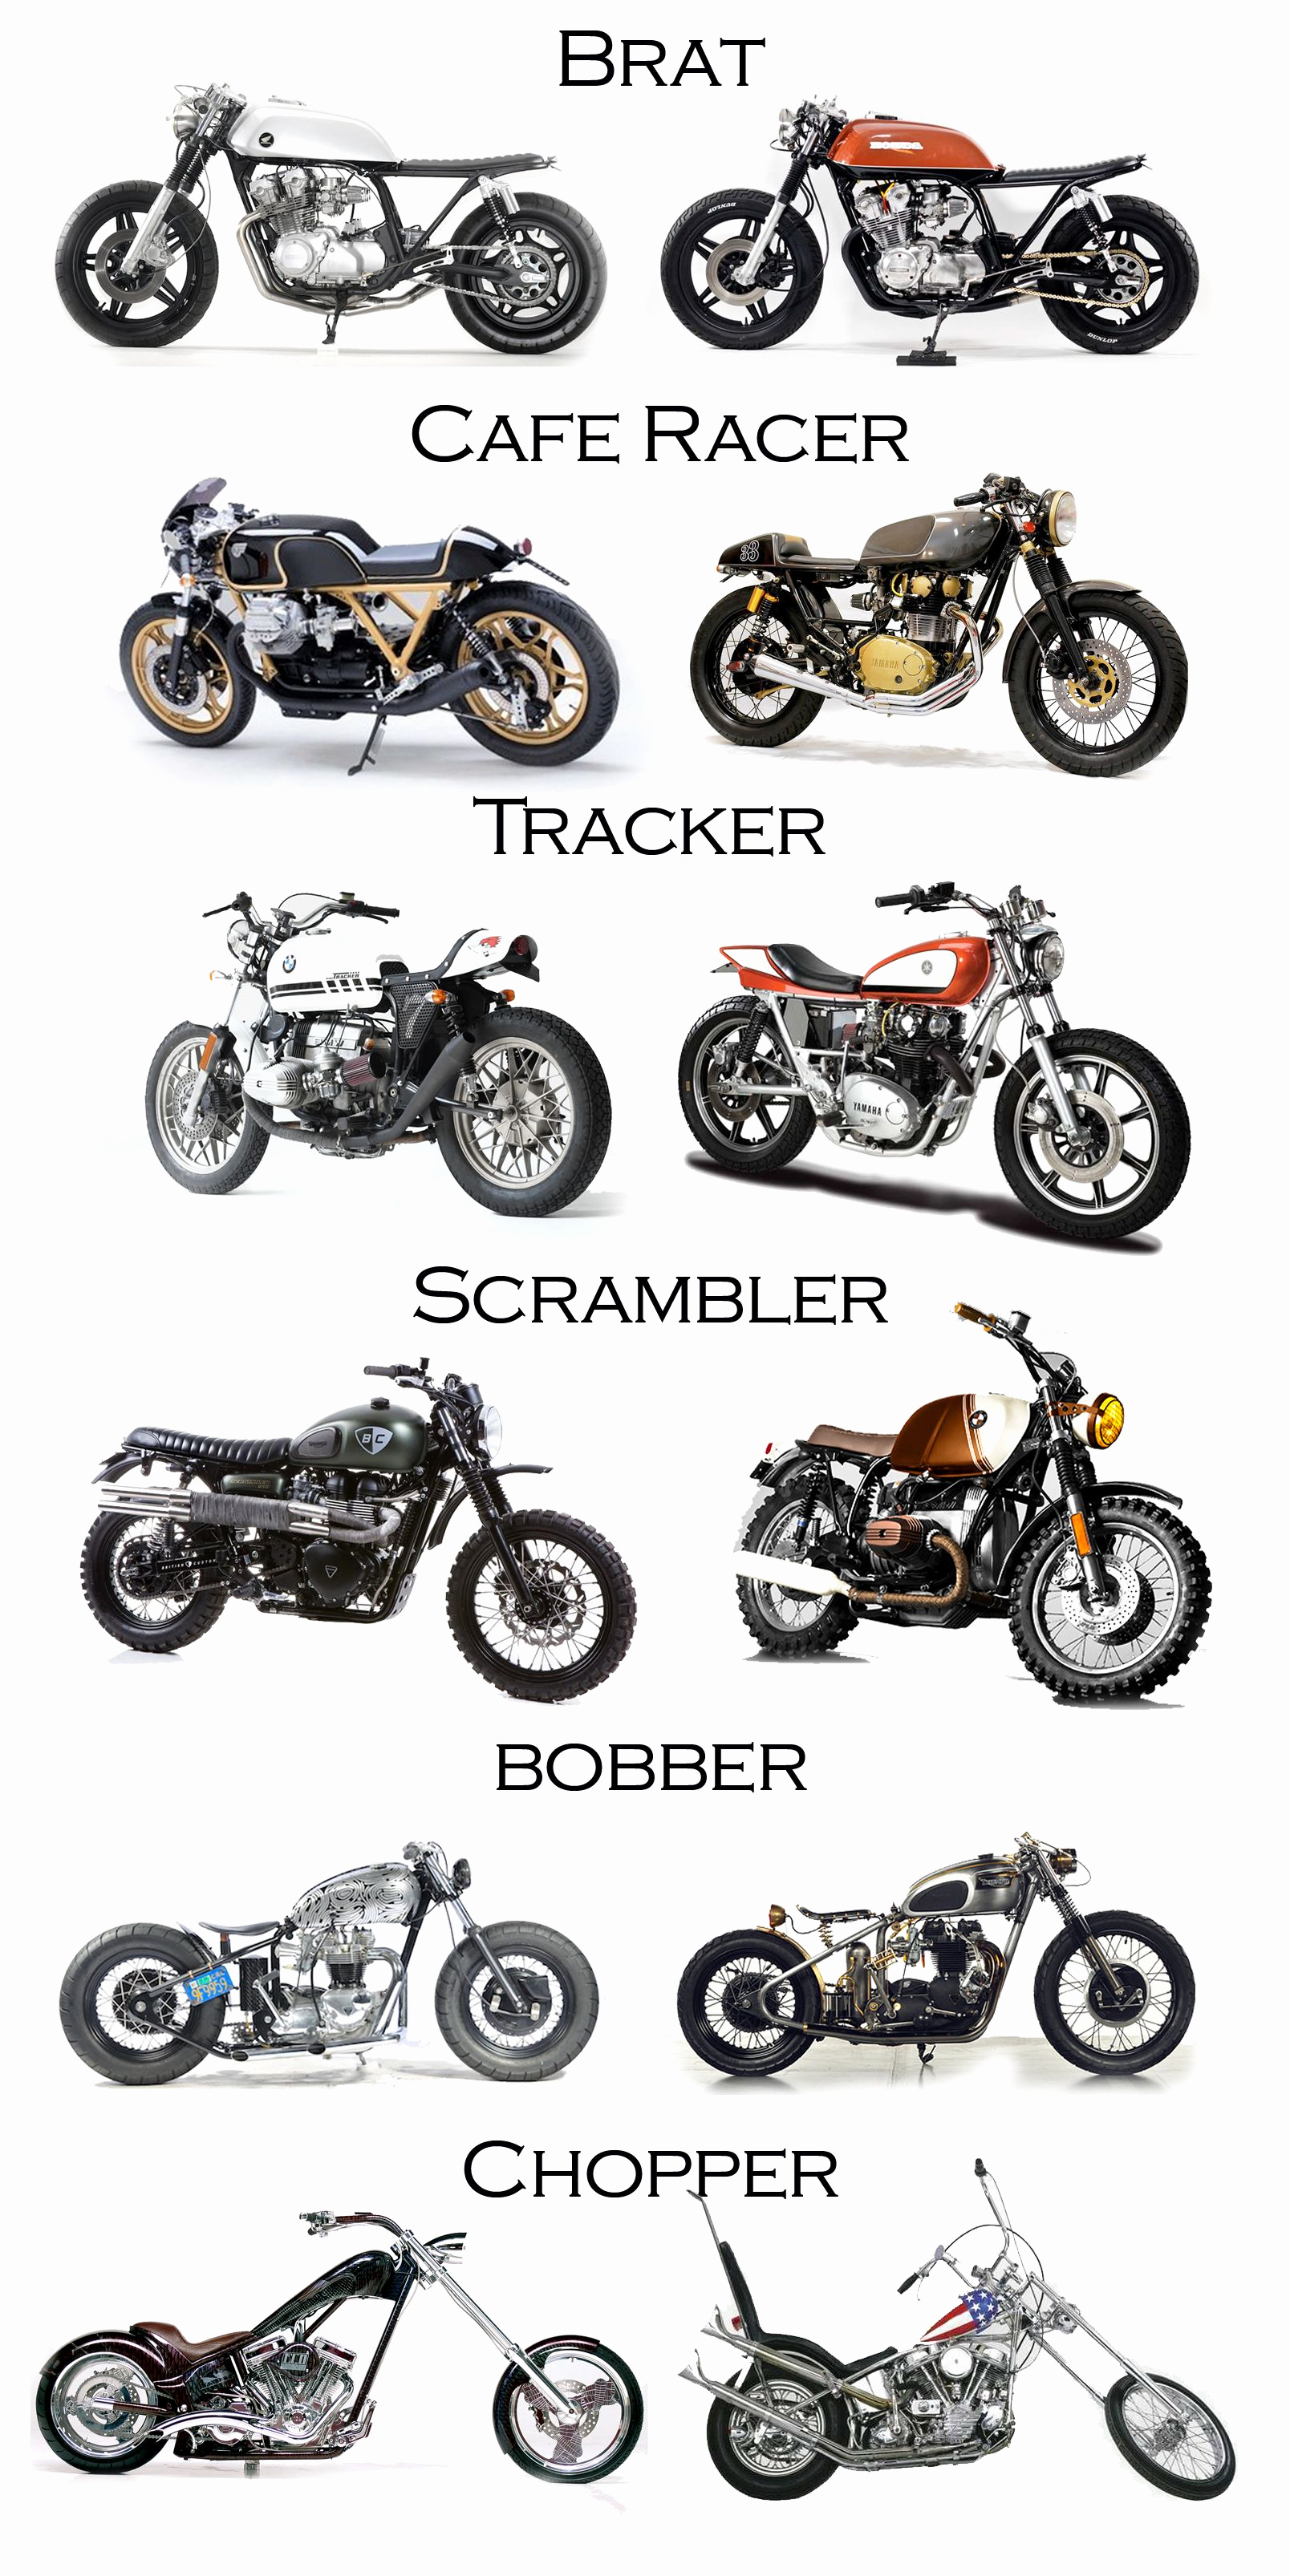 Les meilleures motos pour femmes: comment choisir la bonne moto?